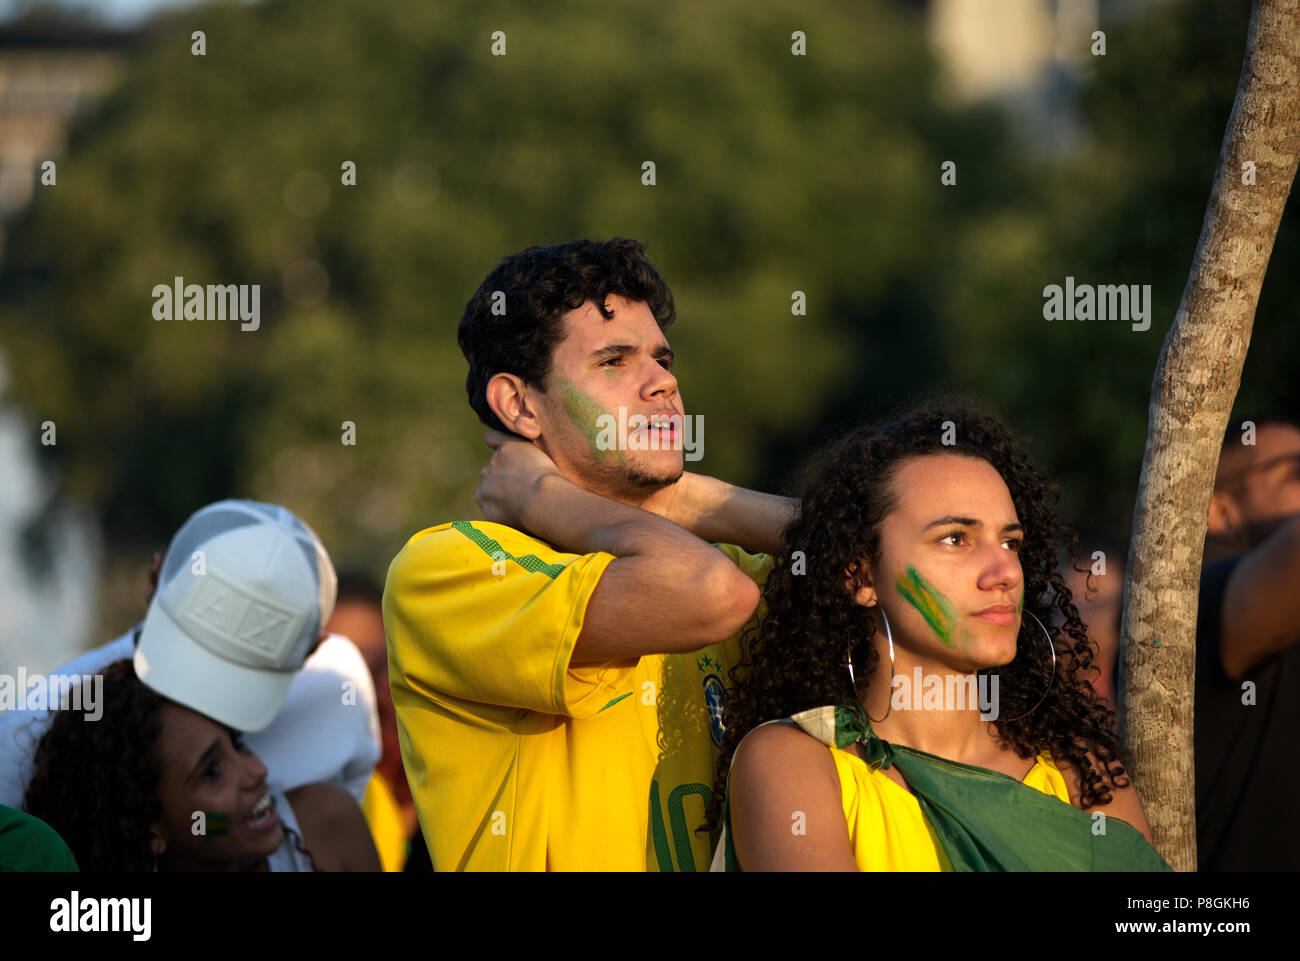 Wm - Juli 6, 2018: Die brasilianischen Fans reagieren, da sie ein Fußballspiel zwischen Brasilien und Belgien auf einem großen Bildschirm Event in Rio de Janeiro beobachten Stockfoto